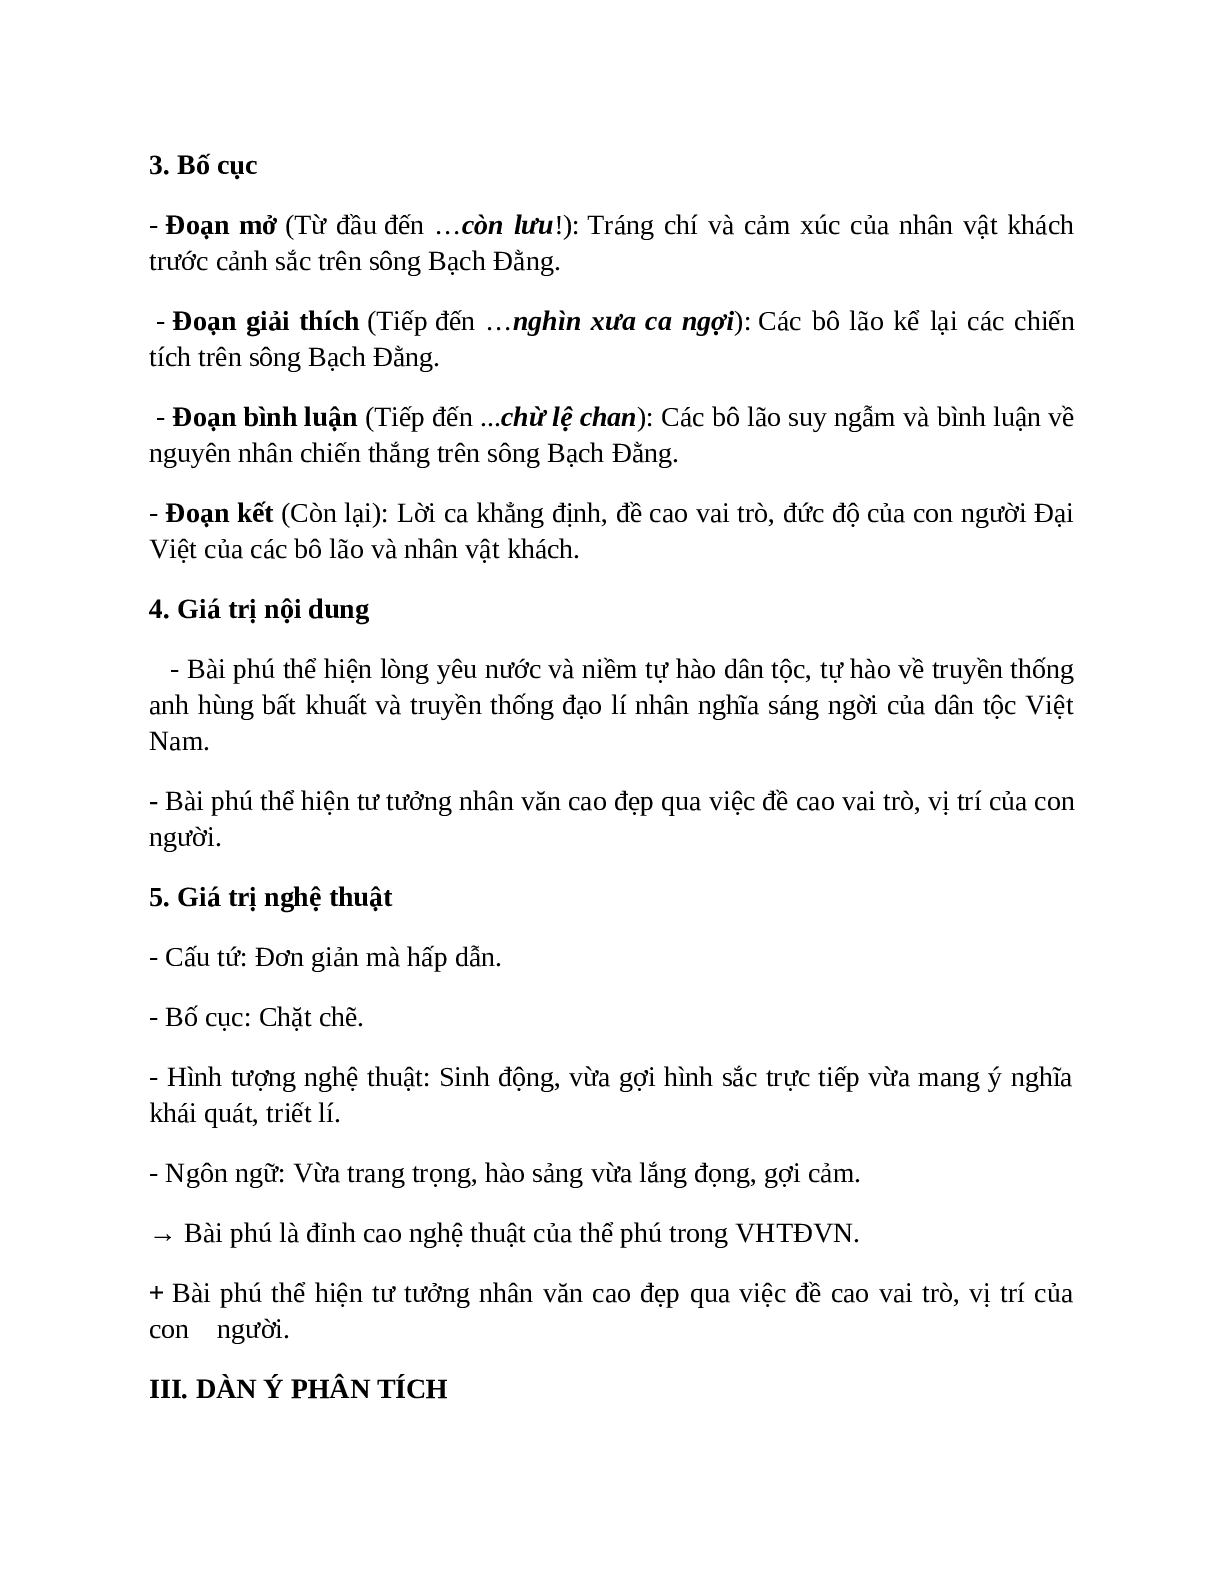 Sơ đồ tư duy bài Phú sông Bạch Đằng dễ nhớ, ngắn nhất - Ngữ văn lớp 10 (trang 3)